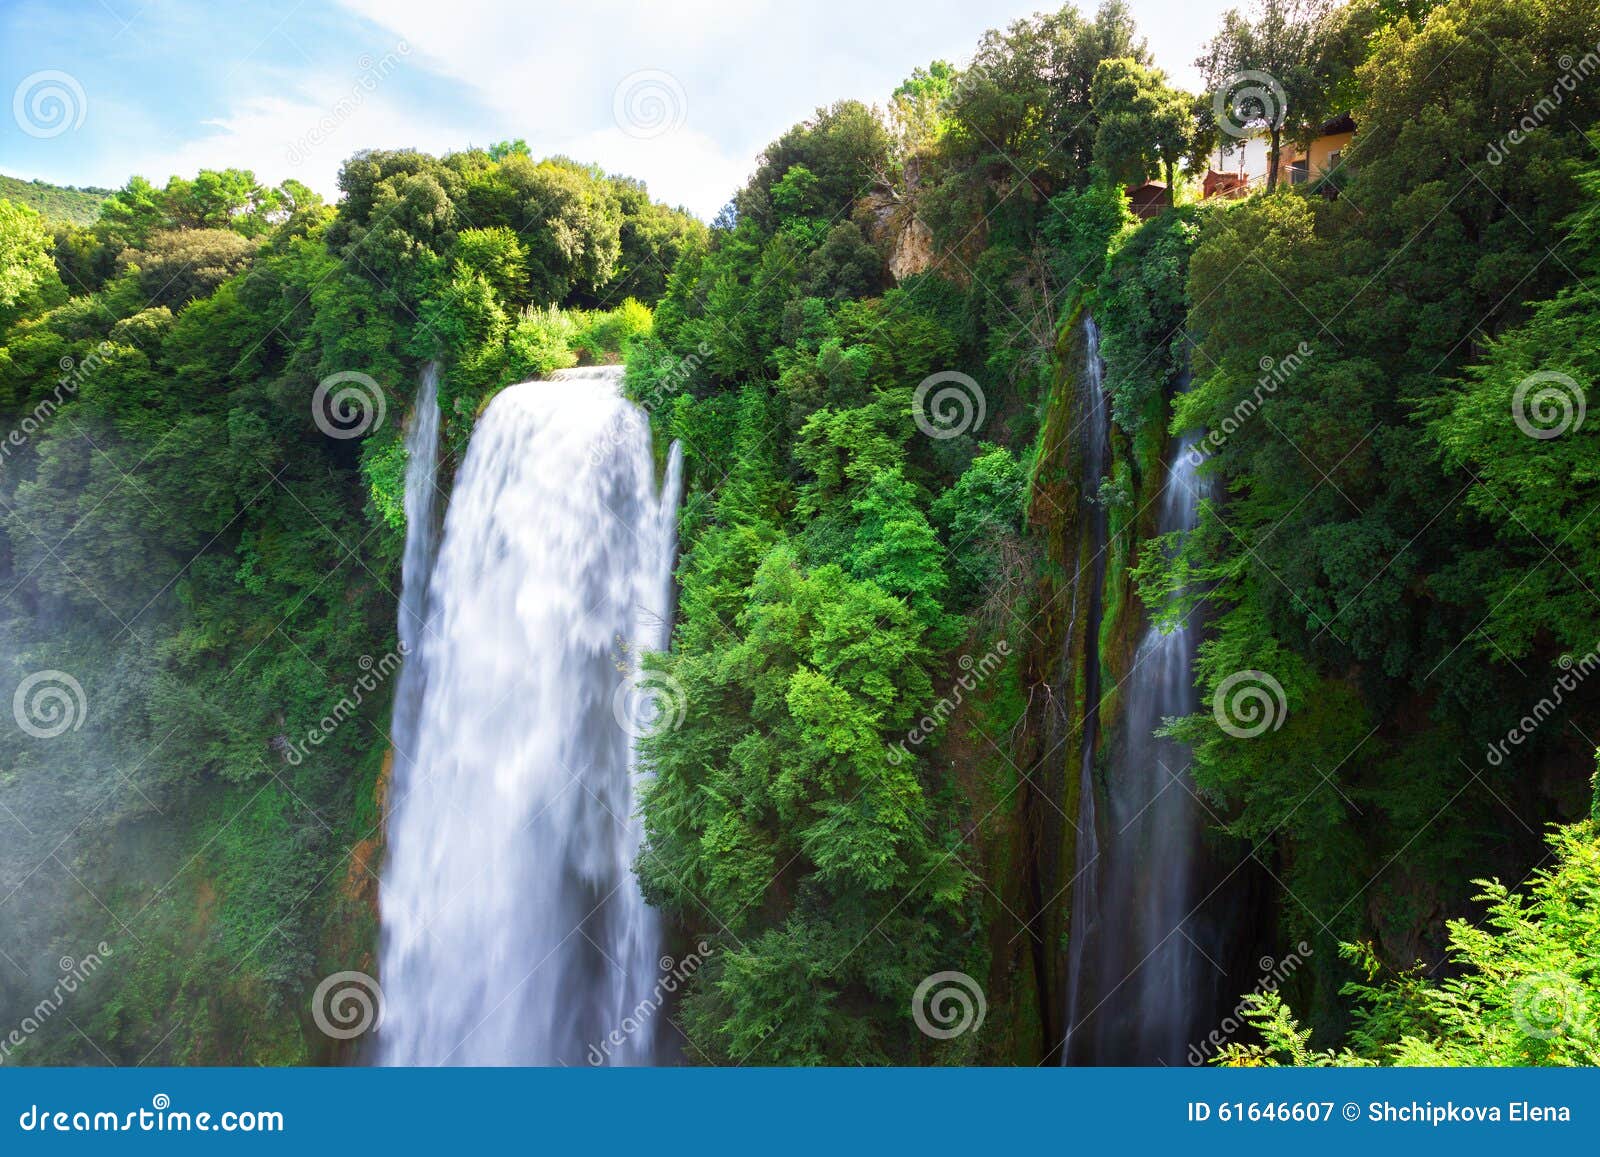 cascata delle marmore waterfalls